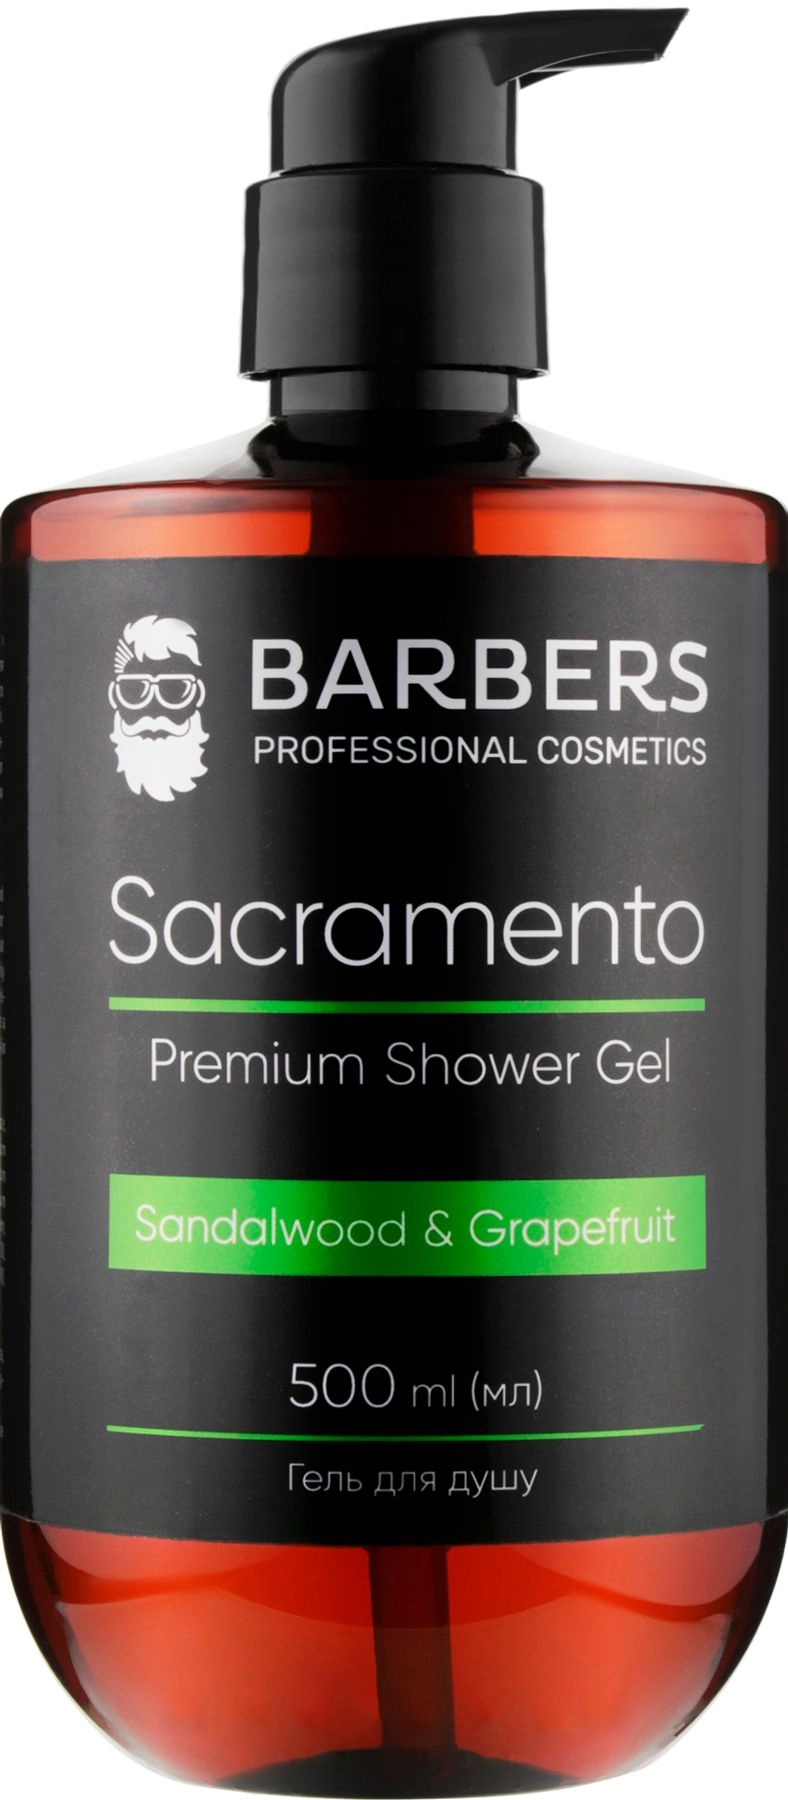 Гель для душа - Barbers Sacramento Premium Shower Gel, 500 мл - фото N1